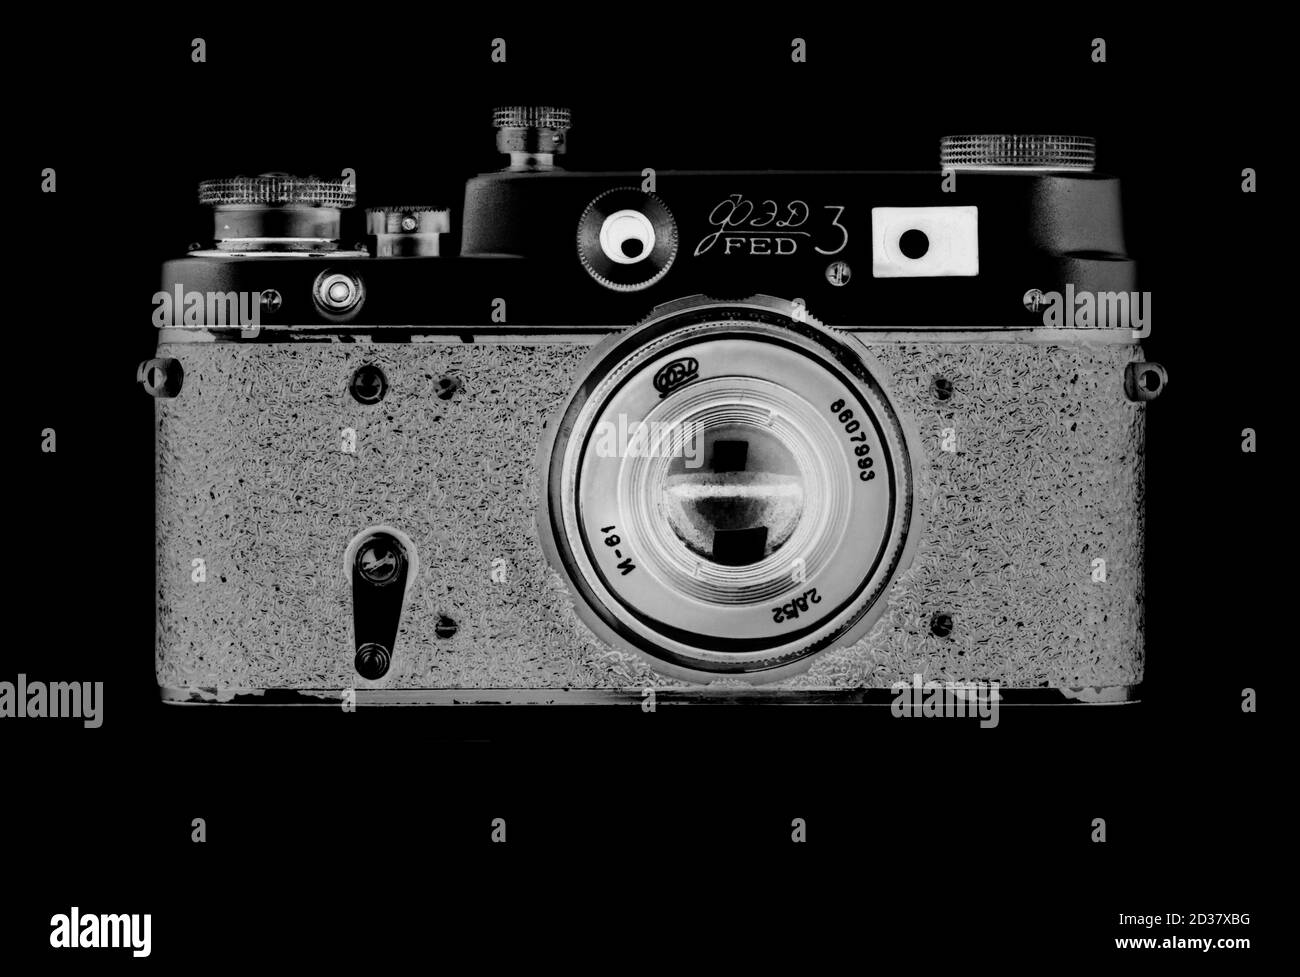 Un'immagine d'arte di una fotocamera d'epoca russa Fed 3 scattata in uno stile negativo. Foto Stock